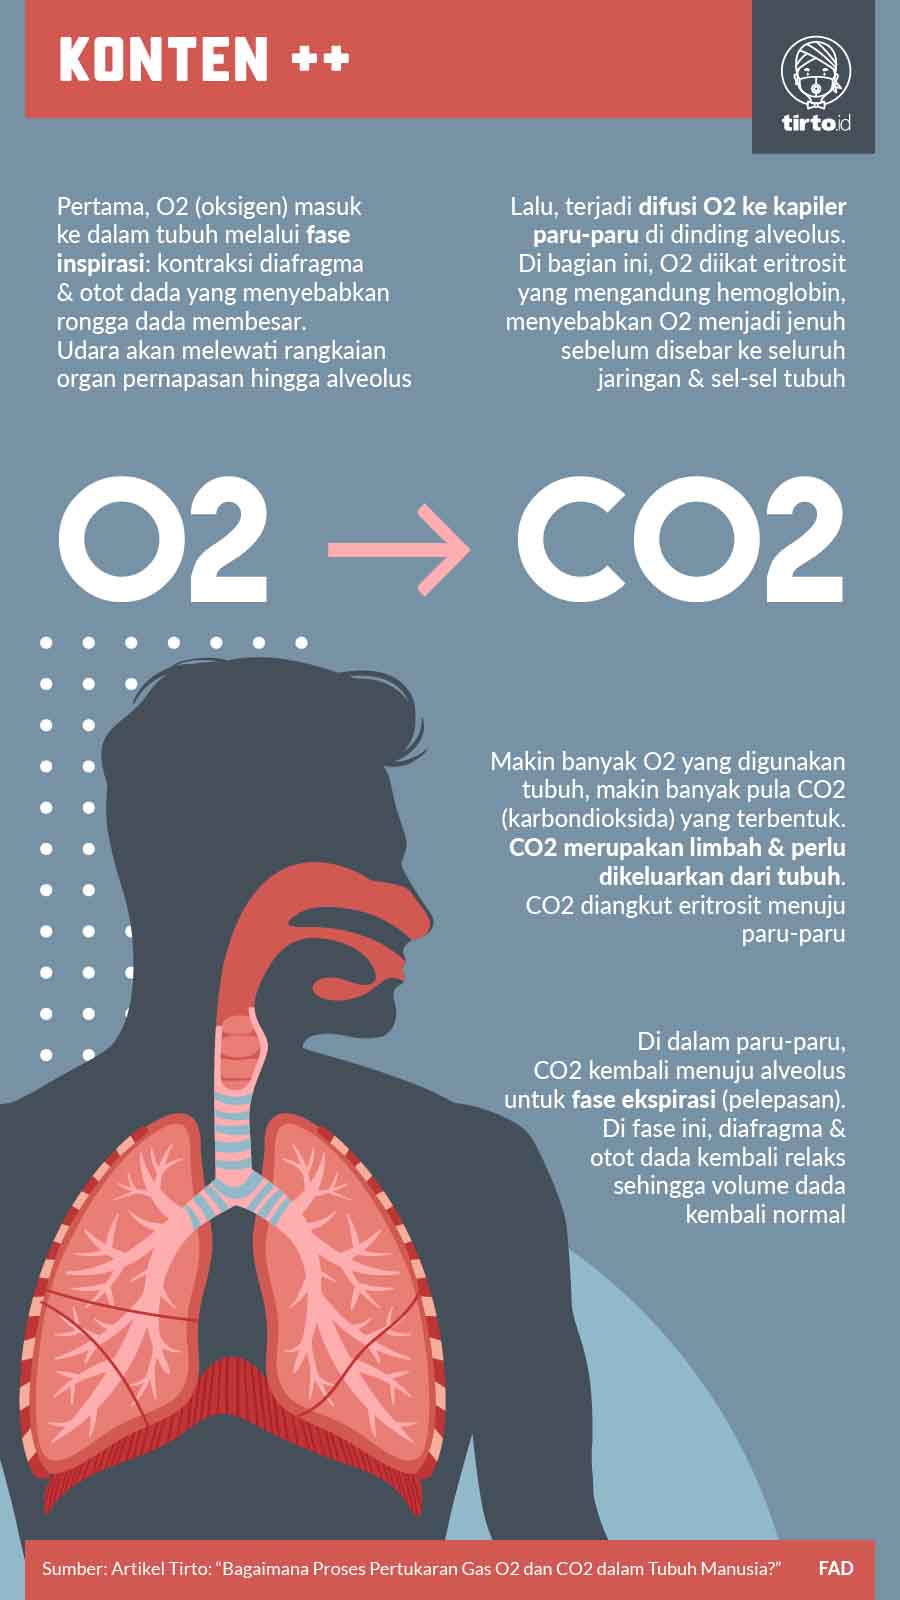 Jaringan dalam paru-paru yang berfungsi sebagai tempat pertukaran gas oksigen dan karbon dioksida adalah